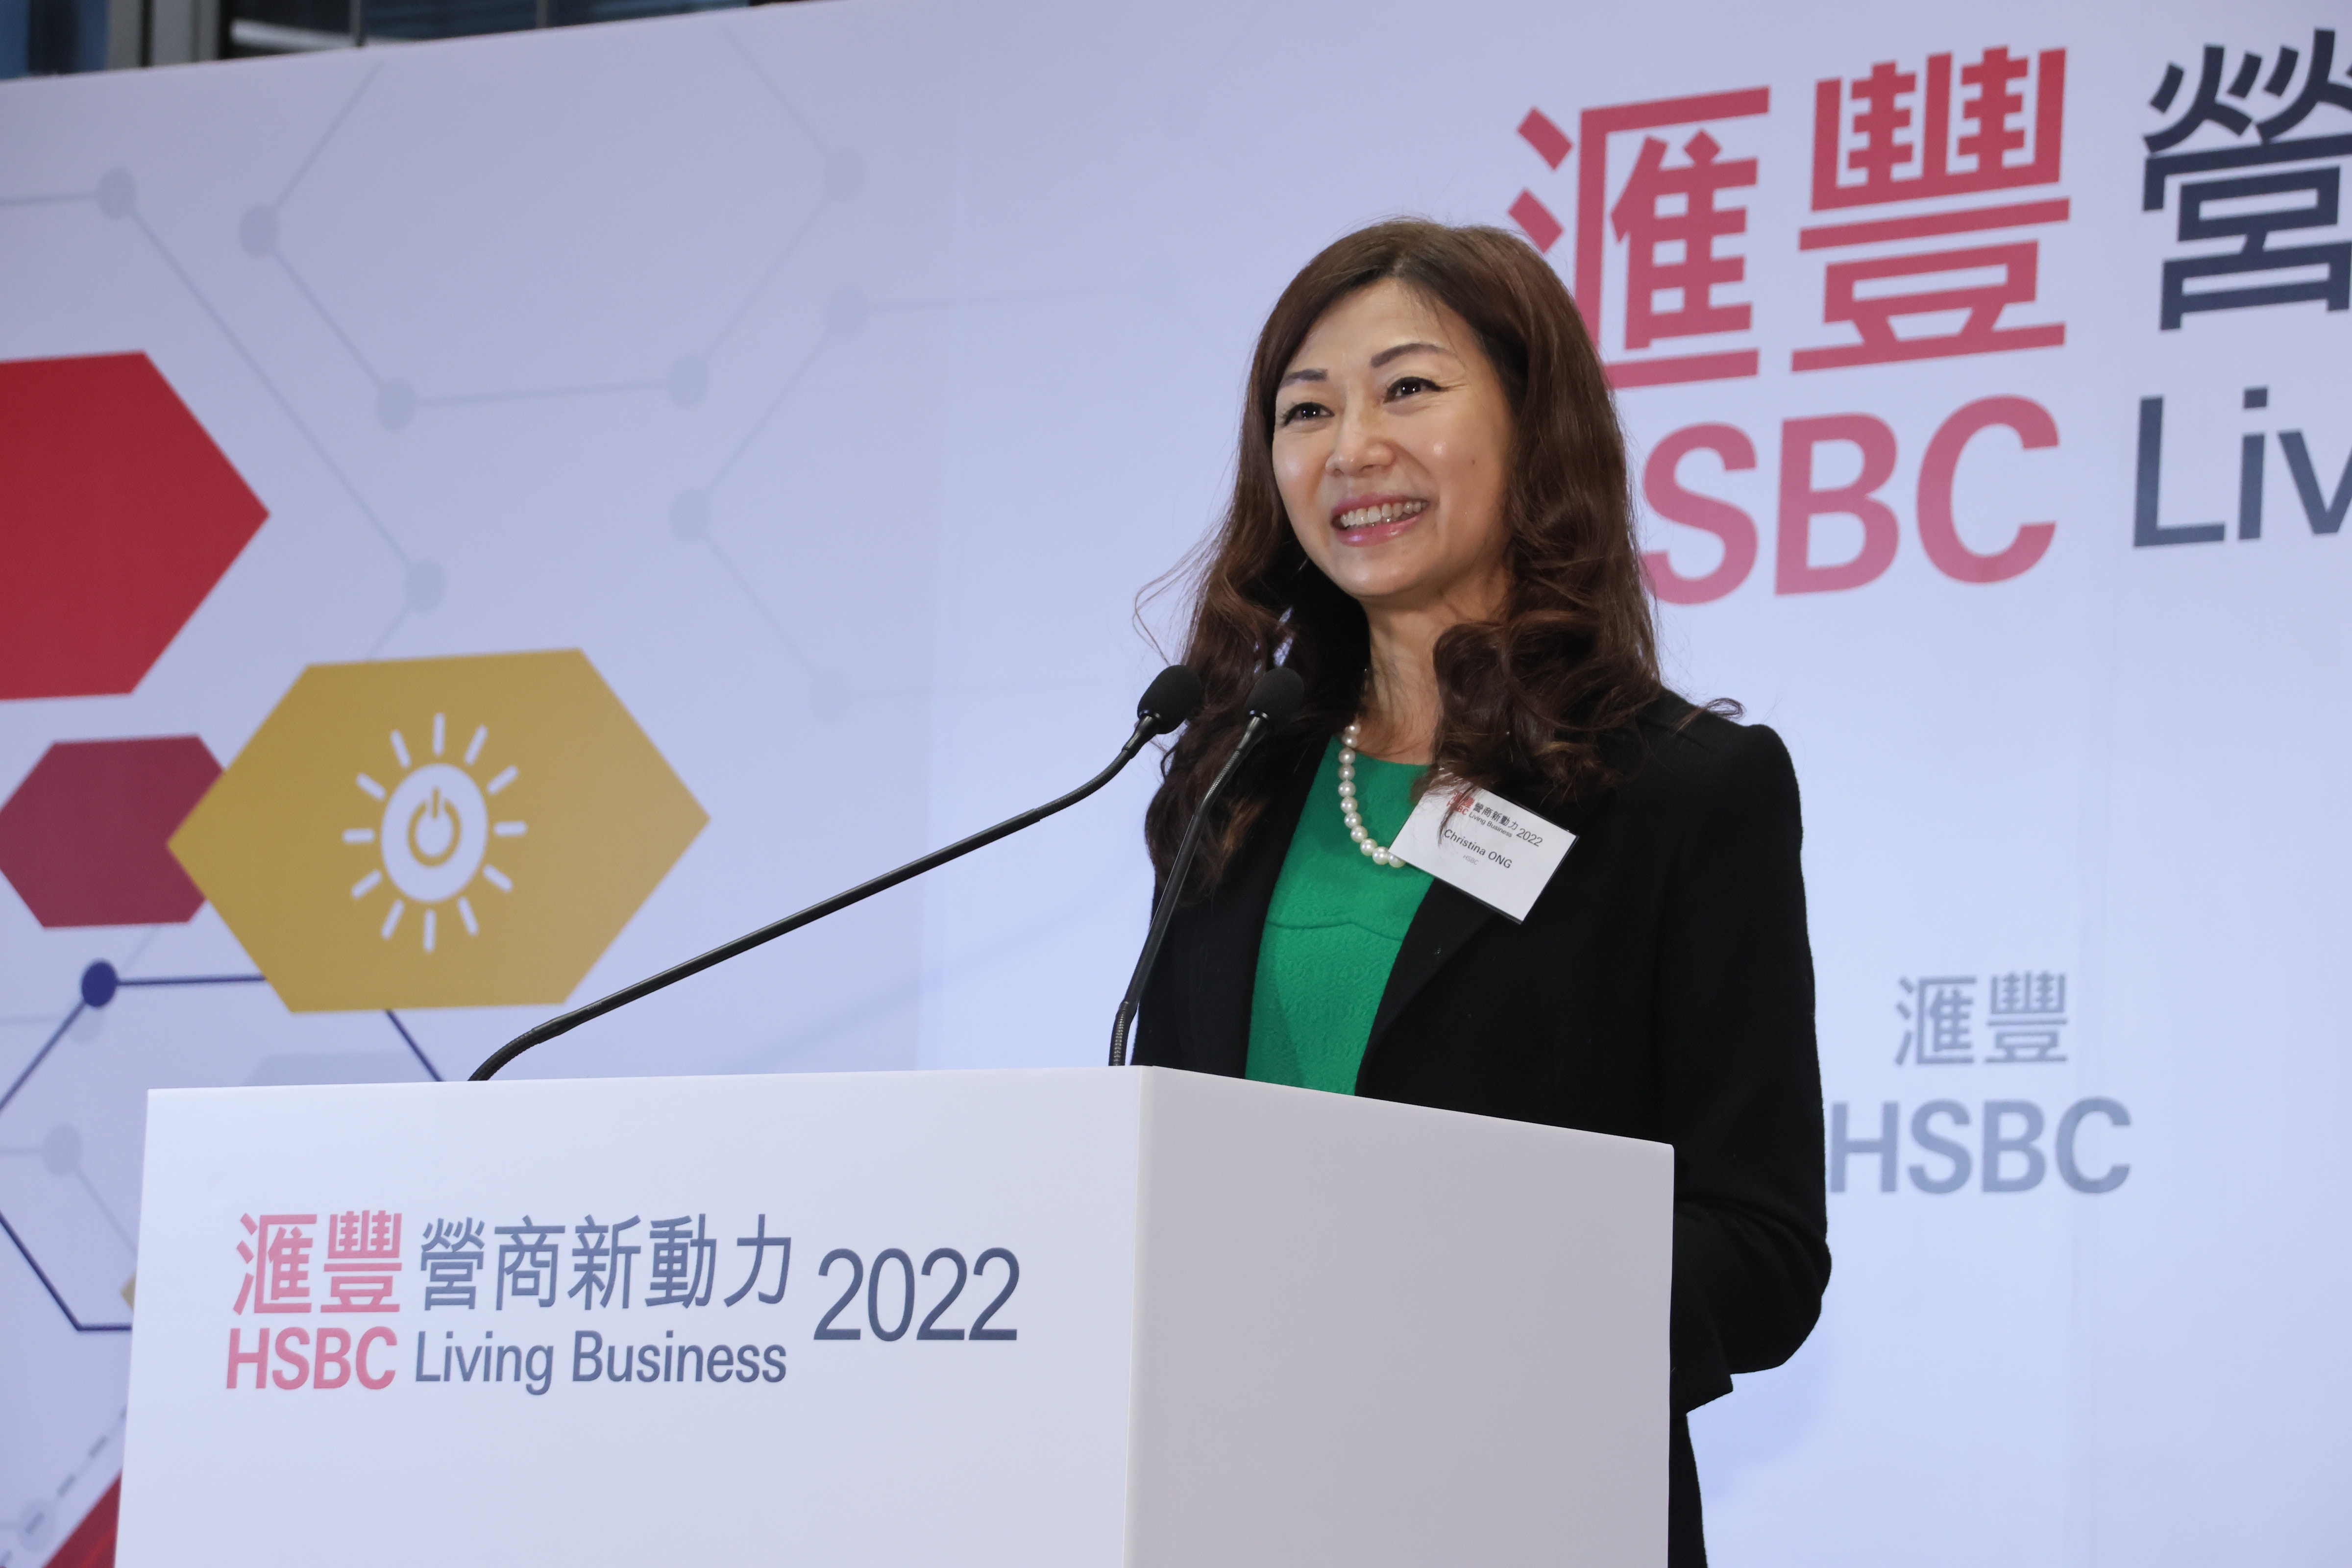 滙豐香港工商金融中小企業主管王海珍在頒獎禮上致辭。